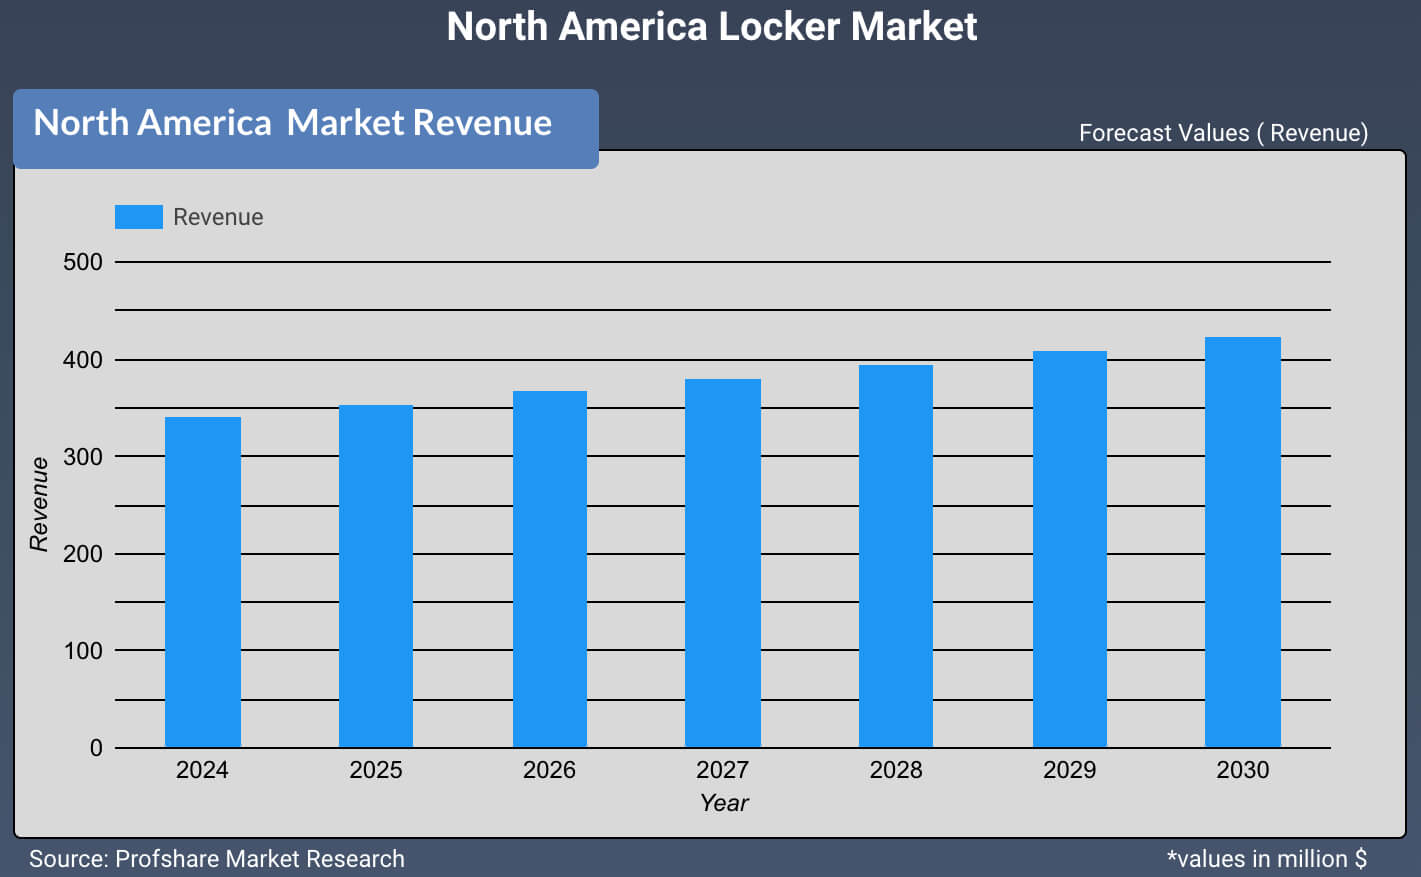 North America Locker Market